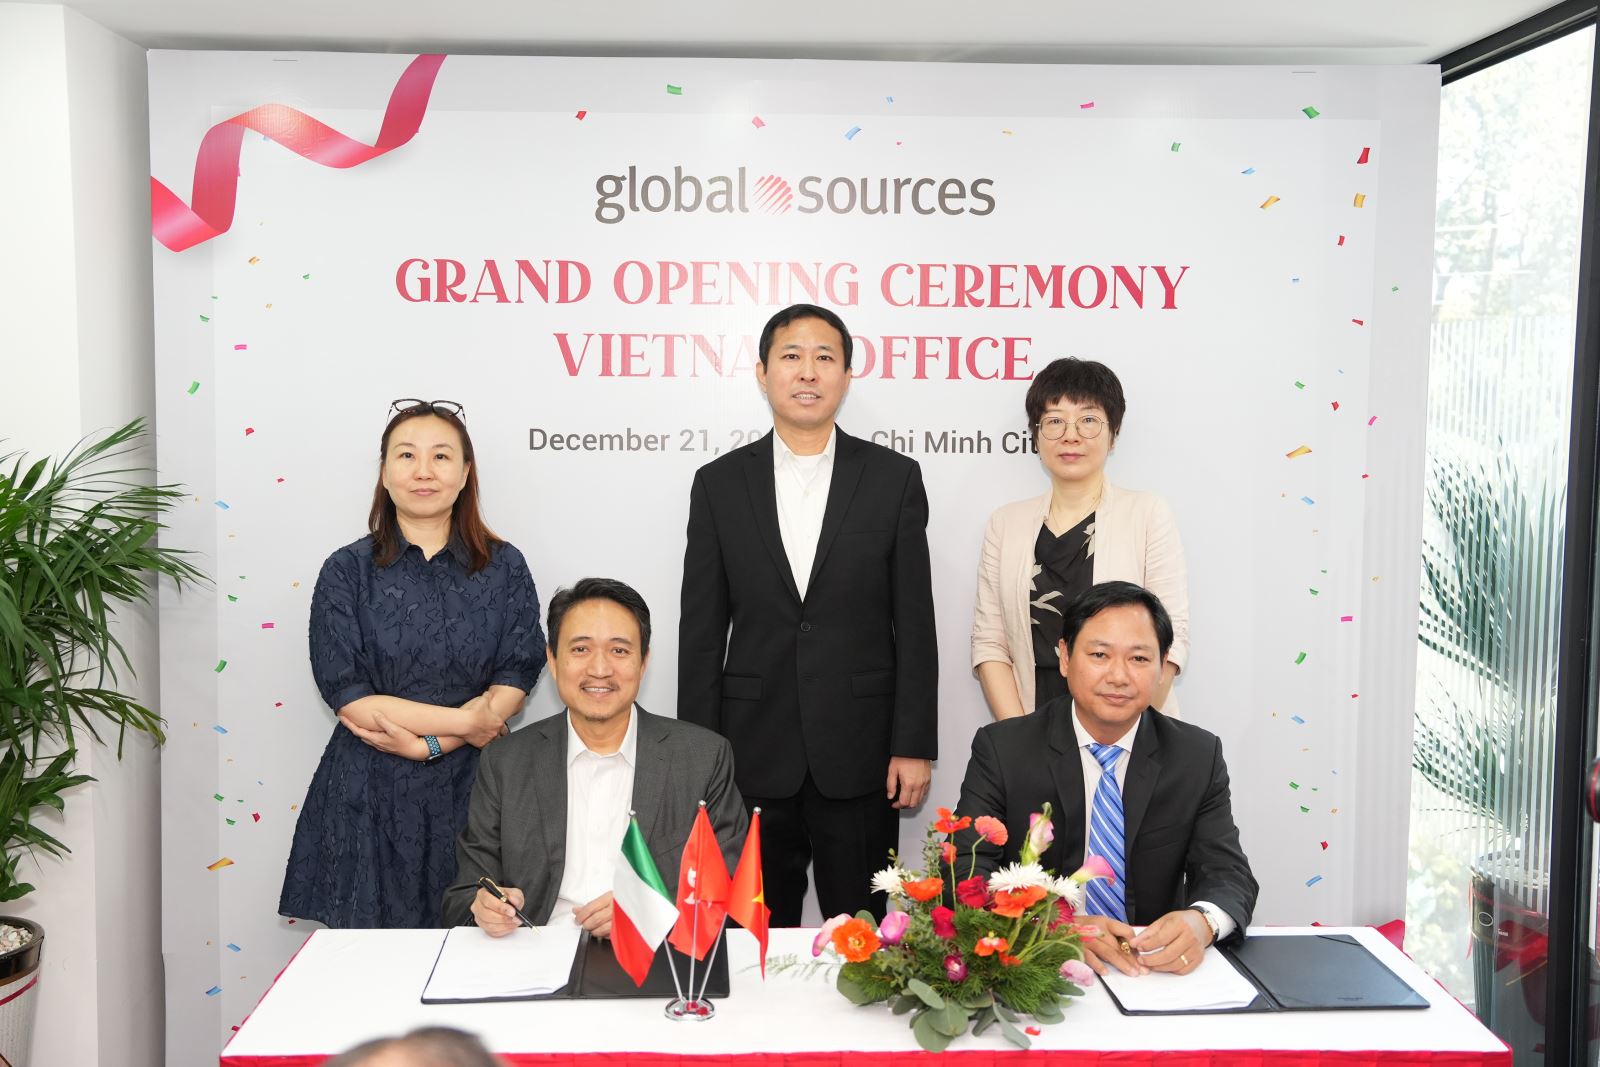 Global Sources và Phòng Thương mại Italia tại Việt Nam đã ký kết Biên bản thỏa thuận (MoU)